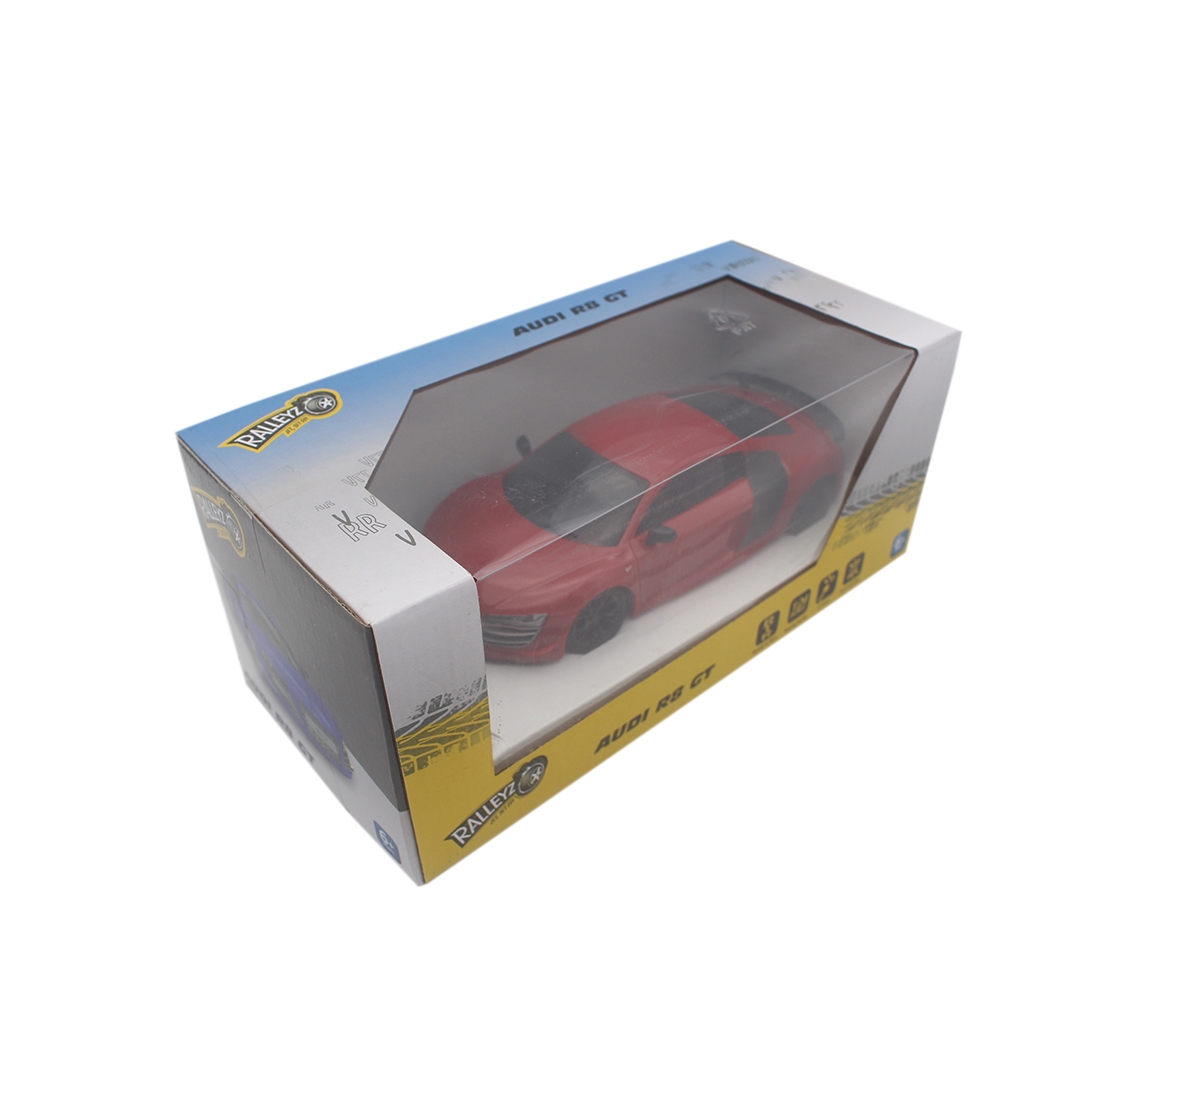 Ralleyz | Ralleyz 1:24 27Mhz Audi R8 Gt Remote Control Car Red, 6Y+ 1